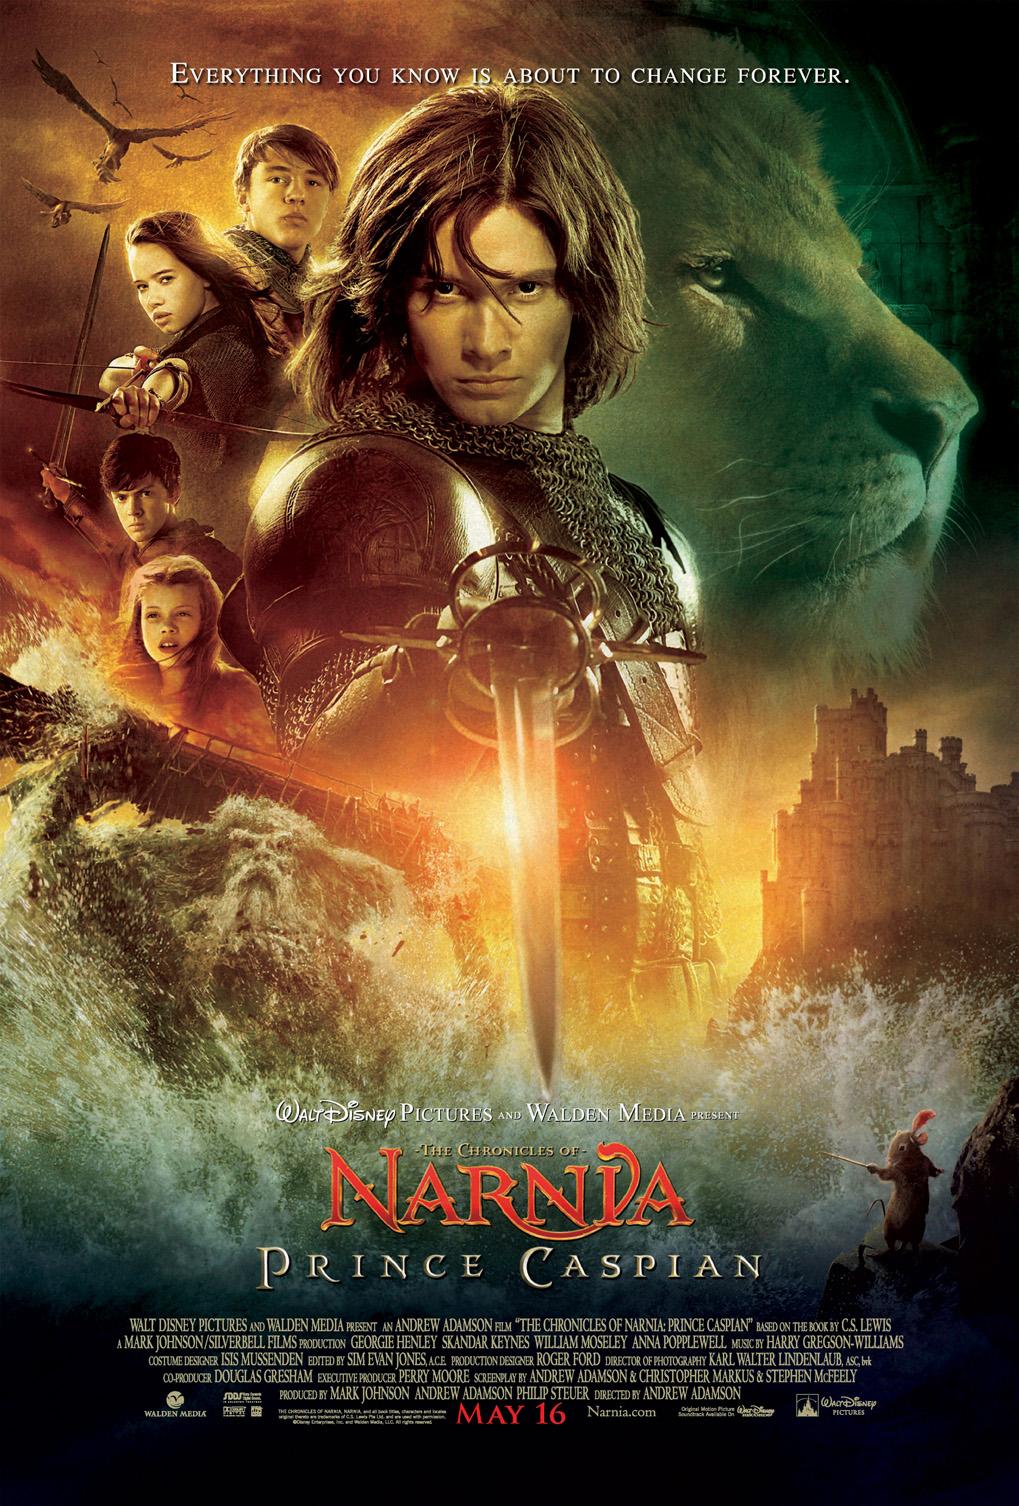 Постер фильма Хроники Нарнии: Принц Каспиан | Chronicles of Narnia: Prince Caspian